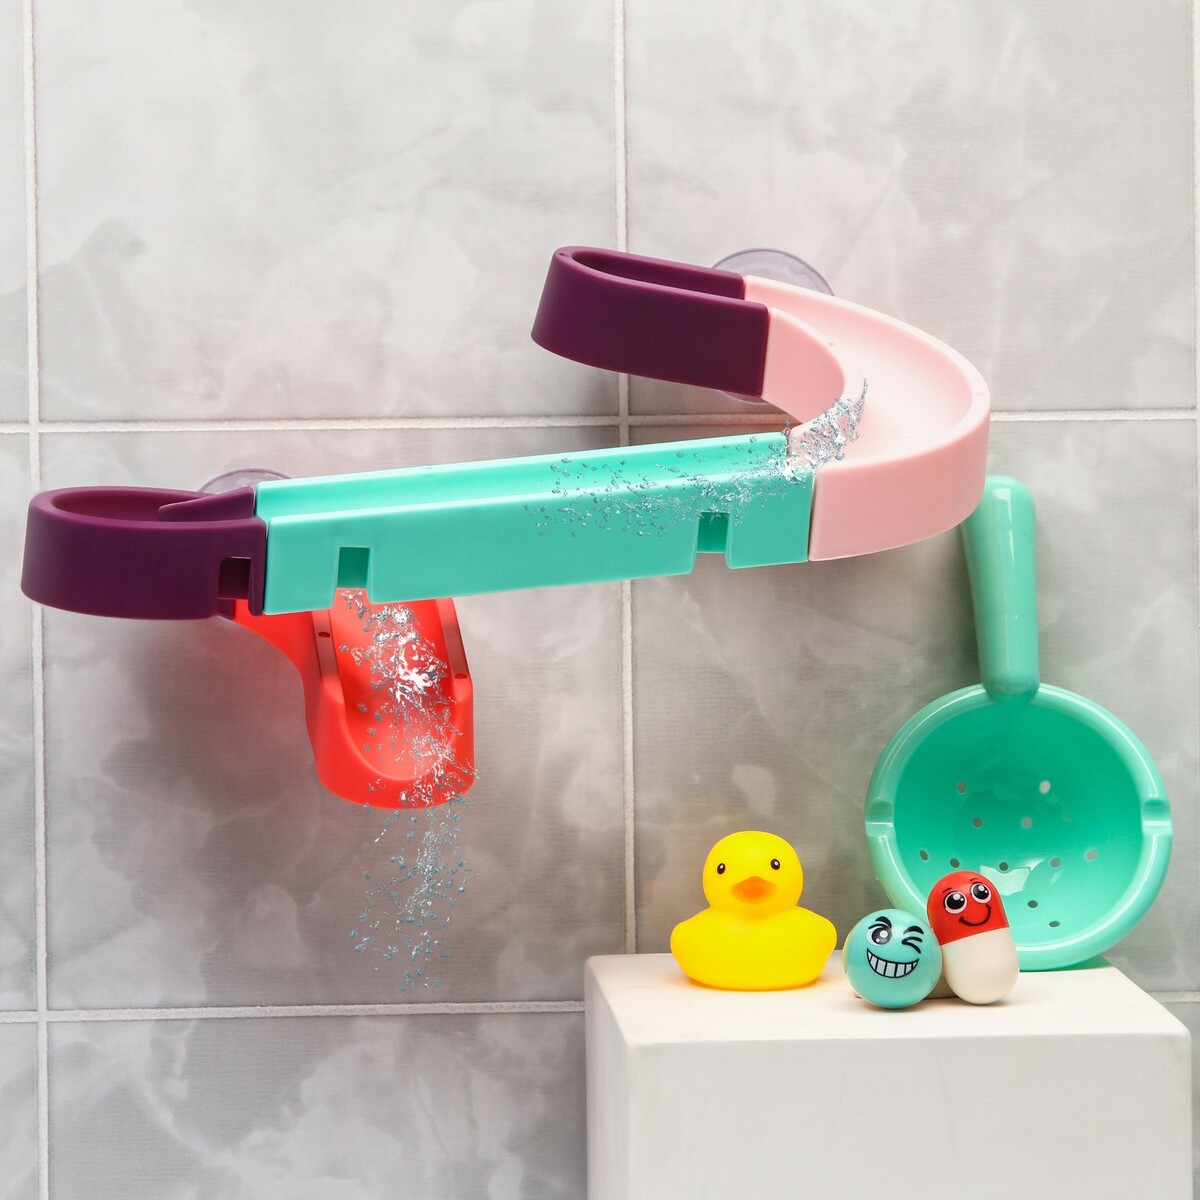 Игрушка водная горка для игры в ванной, конструктор, набор на присосках